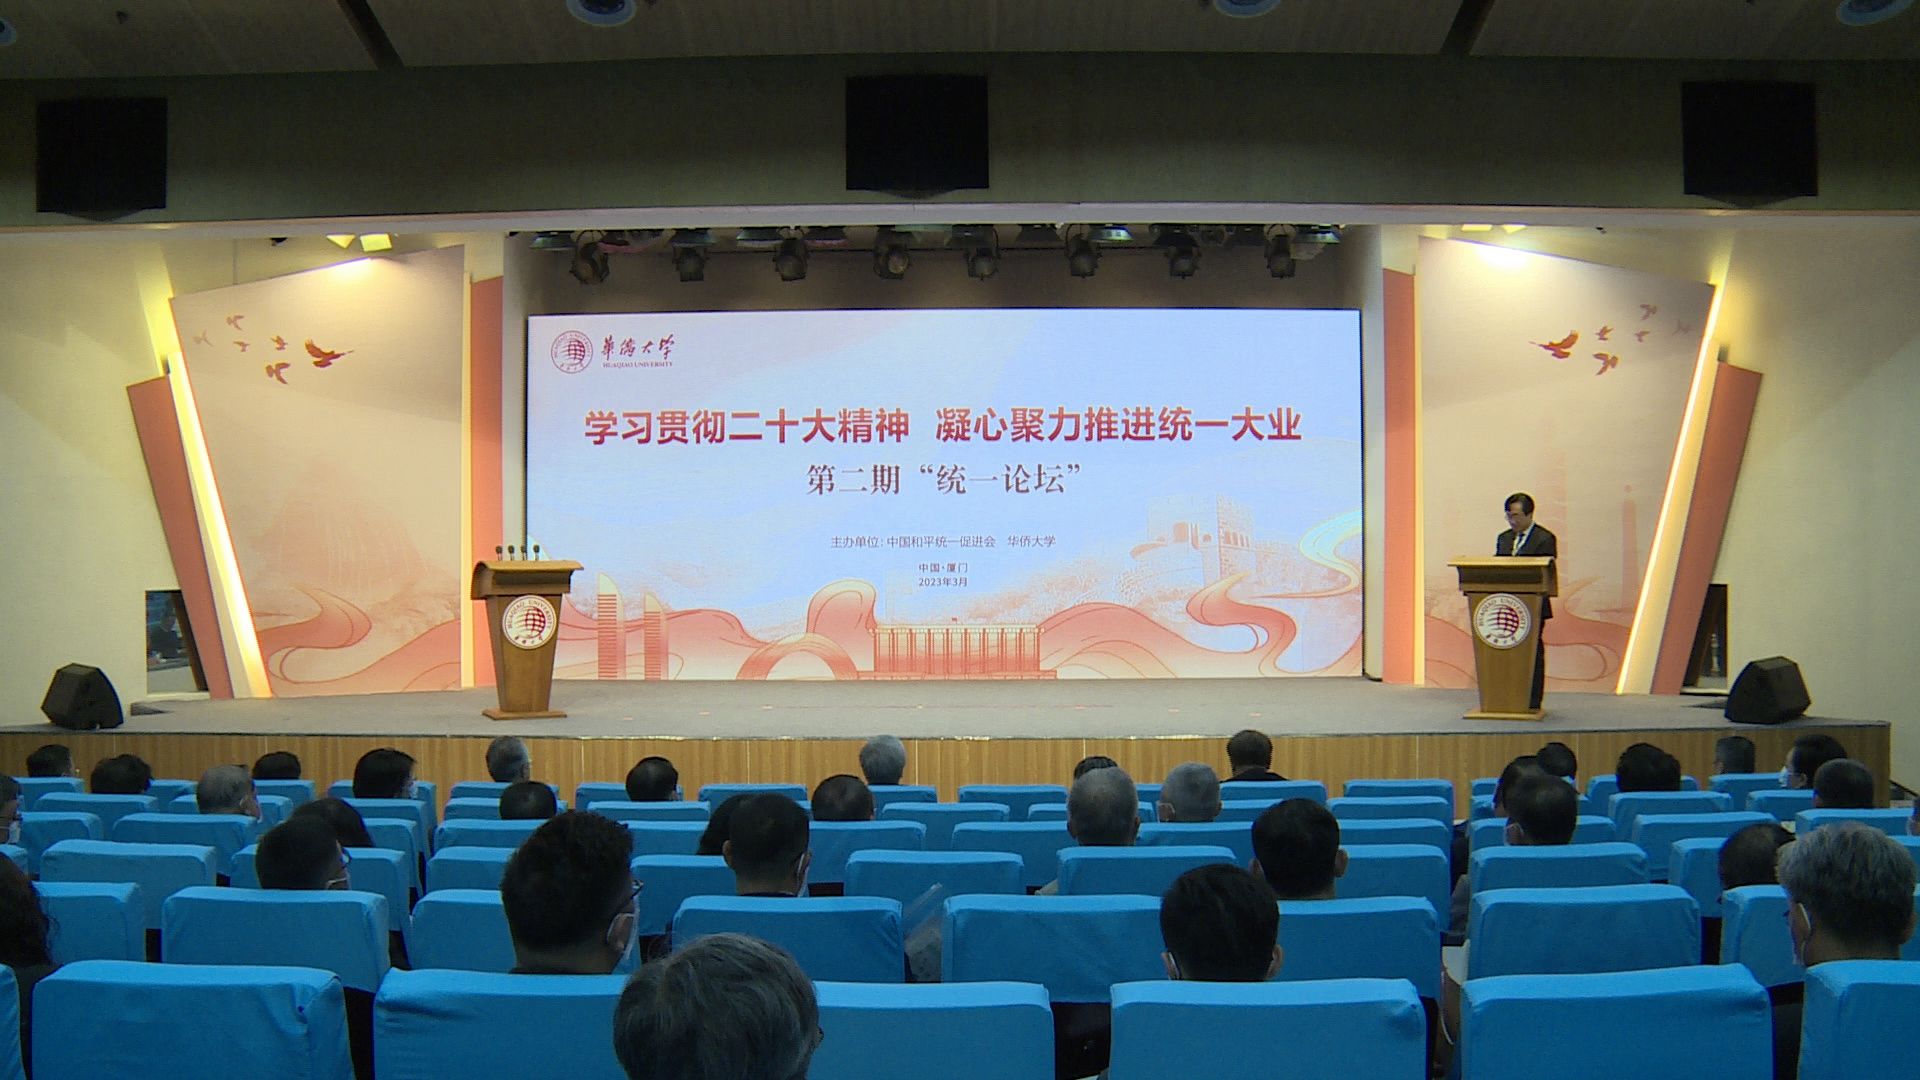 第二期“统一论坛”在华侨大学举行